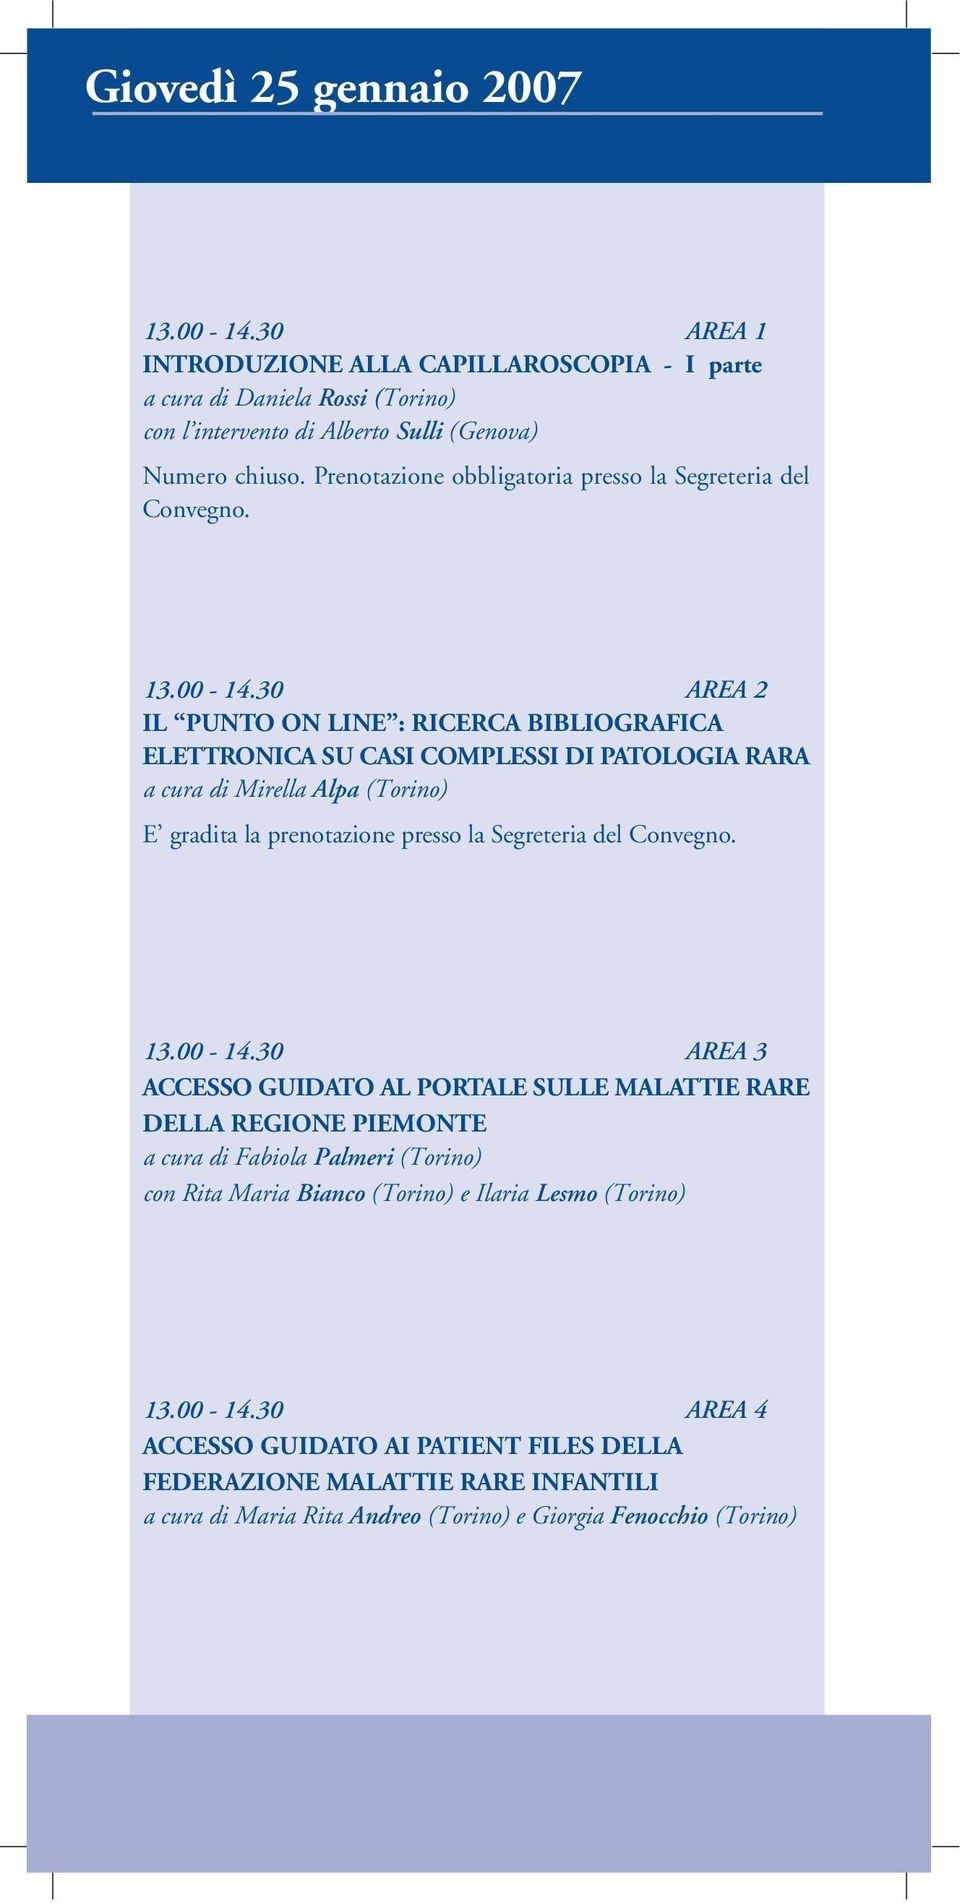 30 AREA 2 IL PUNTO ON LINE : RICERCA BIBLIOGRAFICA ELETTRONICA SU CASI COMPLESSI DI PATOLOGIA RARA a cura di Mirella Alpa (Torino) E gradita la prenotazione presso la Segreteria del Convegno. 13.